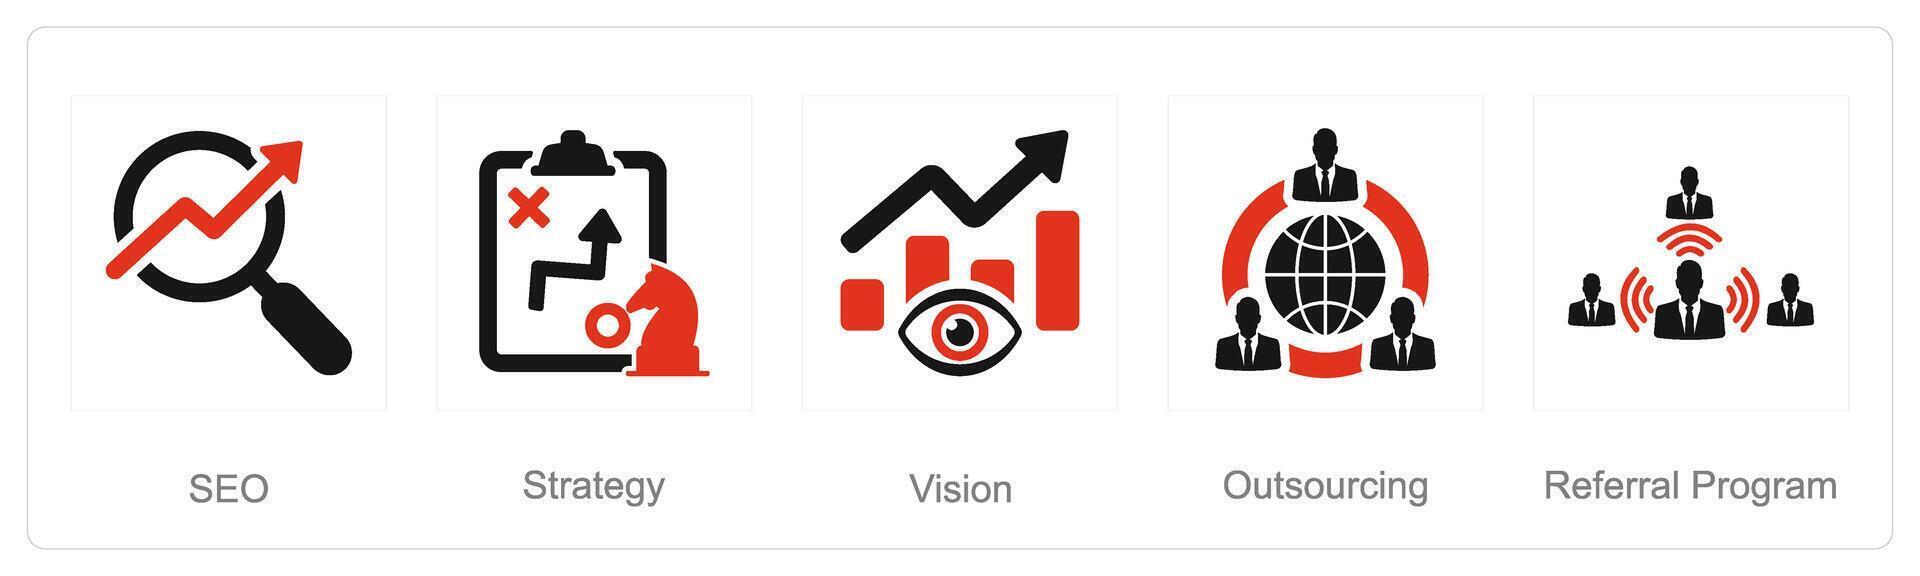 uma conjunto do 5 aumentar venda ícones Como SEO, estratégia, visão vetor